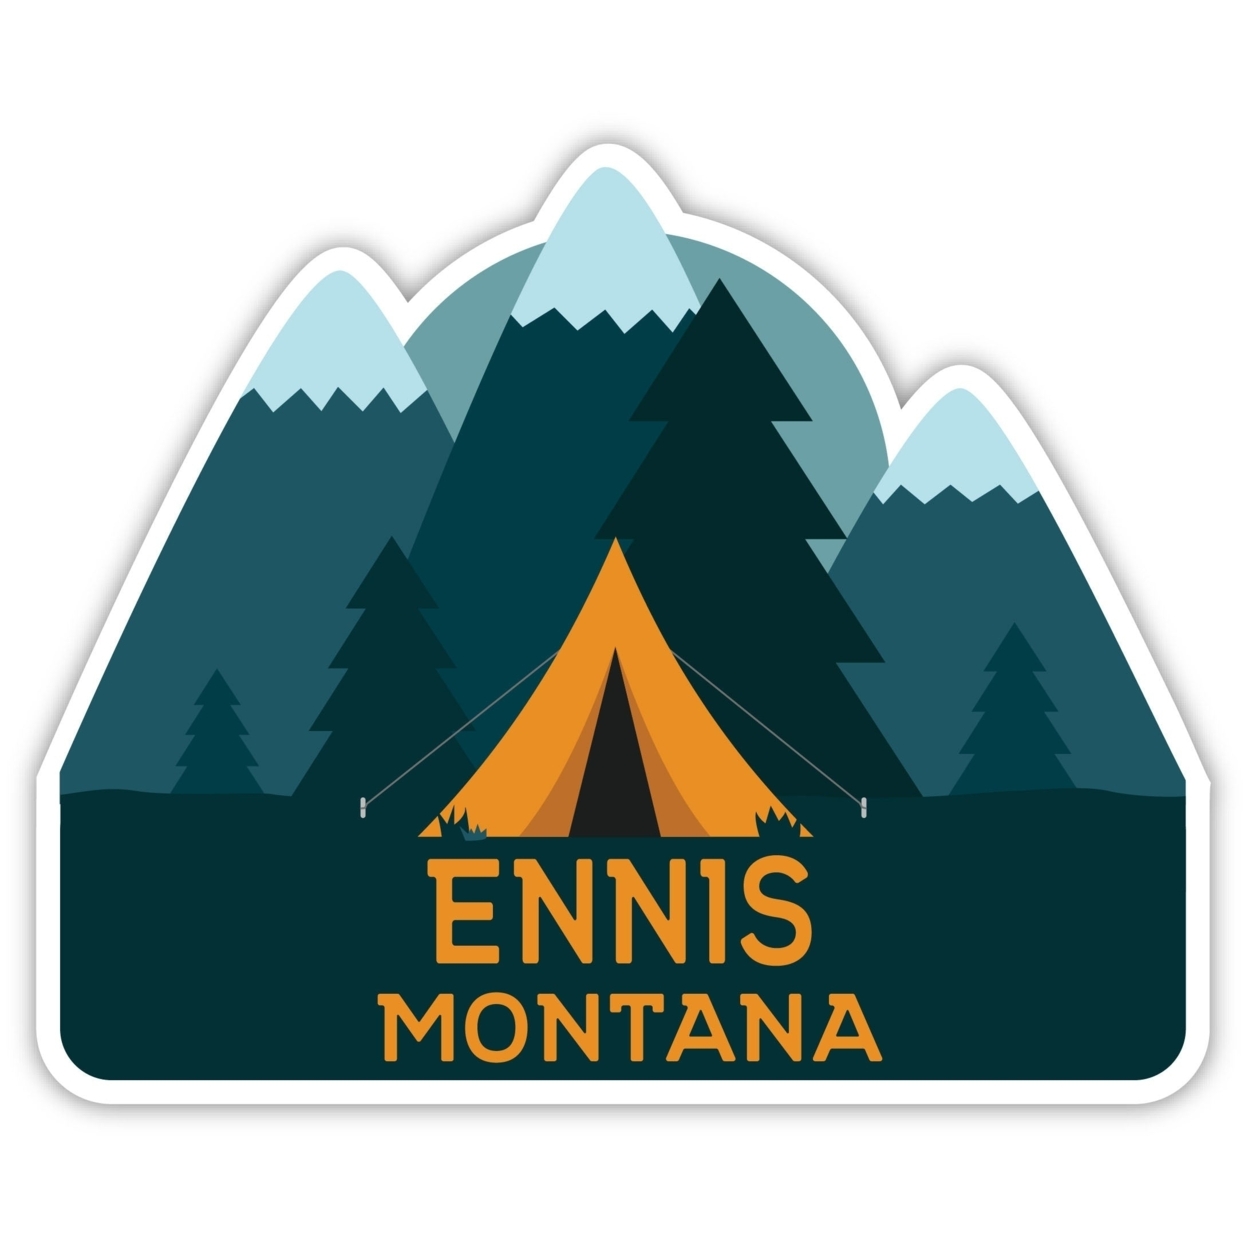 Ennis Montana Souvenir Decorative Stickers (Choose Theme And Size) - Single Unit, 8-Inch, Tent